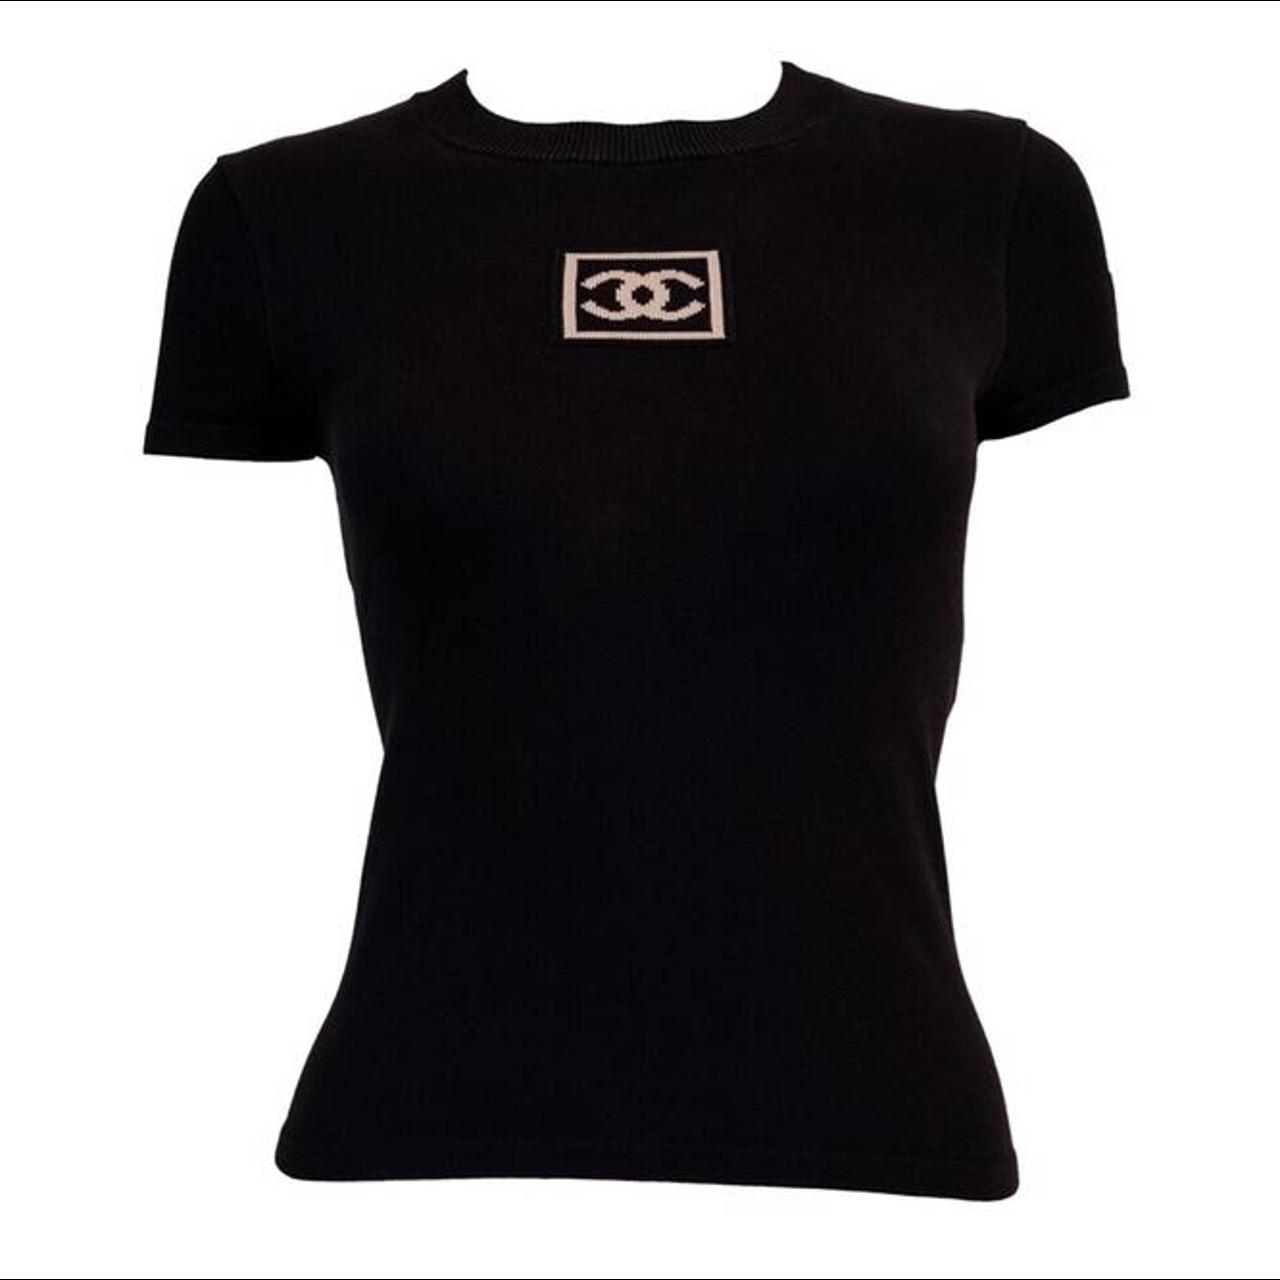 AUTHENTIC Chanel uniform T-Shirt T Shirt was a - Depop